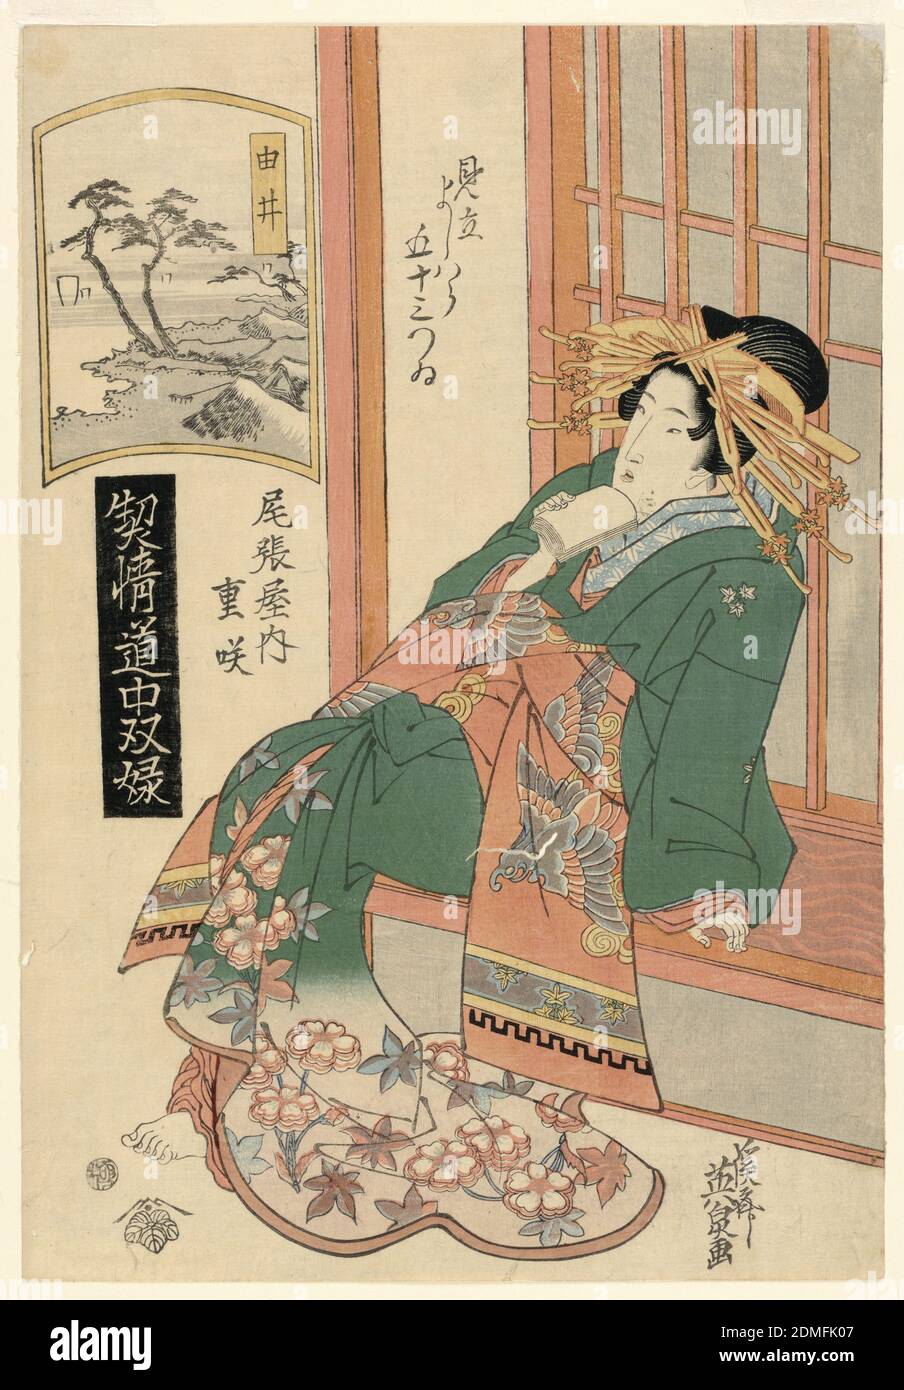 Yui, tratto dalla serie, 'The Highest Ranking Geisha's Journey', Keisei Eisen, giapponese, 1790 – 1848, stampa a blocchi di legno in inchiostro colorato su carta, la donna seduta contro uno schermo shoji, poggiata su un braccio, si siede in contemplazione. Il quadro dell'edificio evidenzia lo stesso colore arancione nel suo kimono. Nella stampa è presente una finestra che mostra un paesaggio naturale. Altri personaggi giapponesi scritti in kanji e hiragana sono dispersi intorno alla stampa., Giappone, ca. 1830, teatro, Stampa Foto Stock